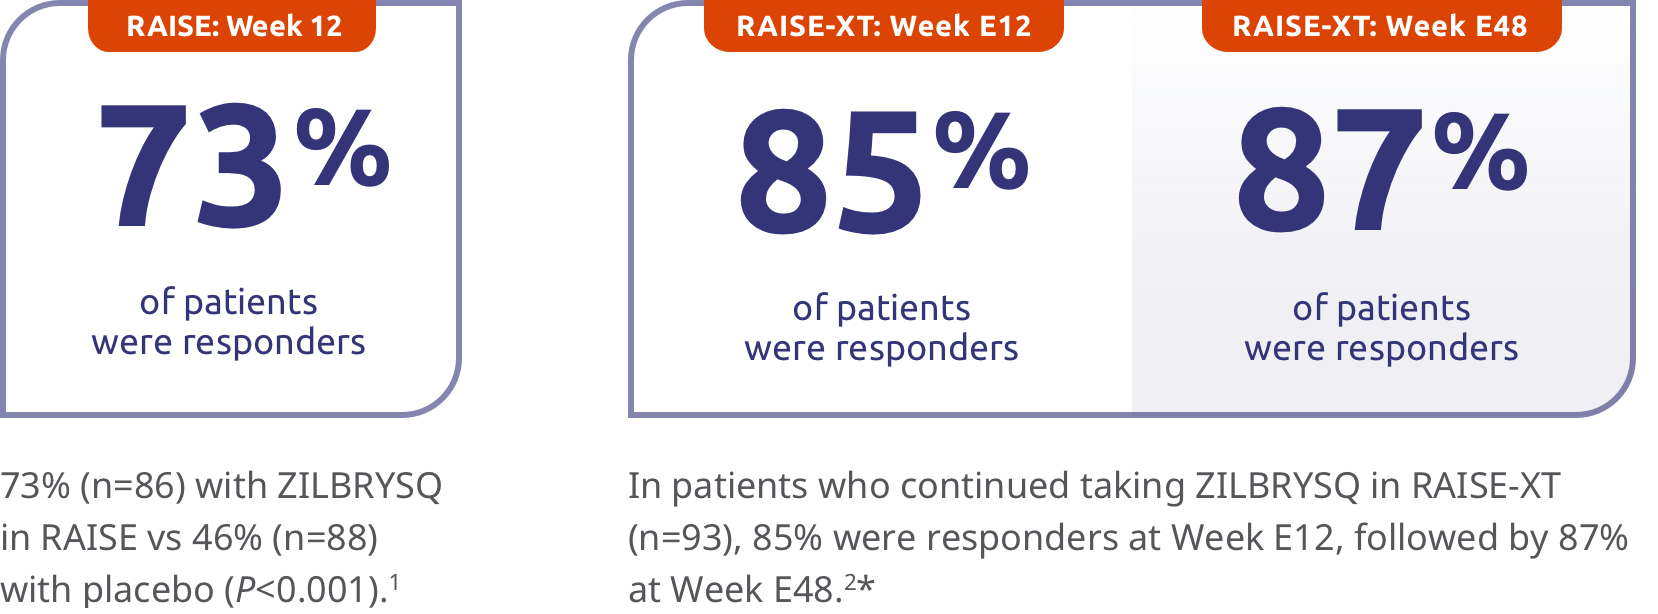 RAISE Week 12 73% of patients were MG-ADL responders. RAISE-XT: Week E12 85% of patients were MG-ADL responders. RAISE-XT: Week E48 87% of patients were MG-ADL responders.